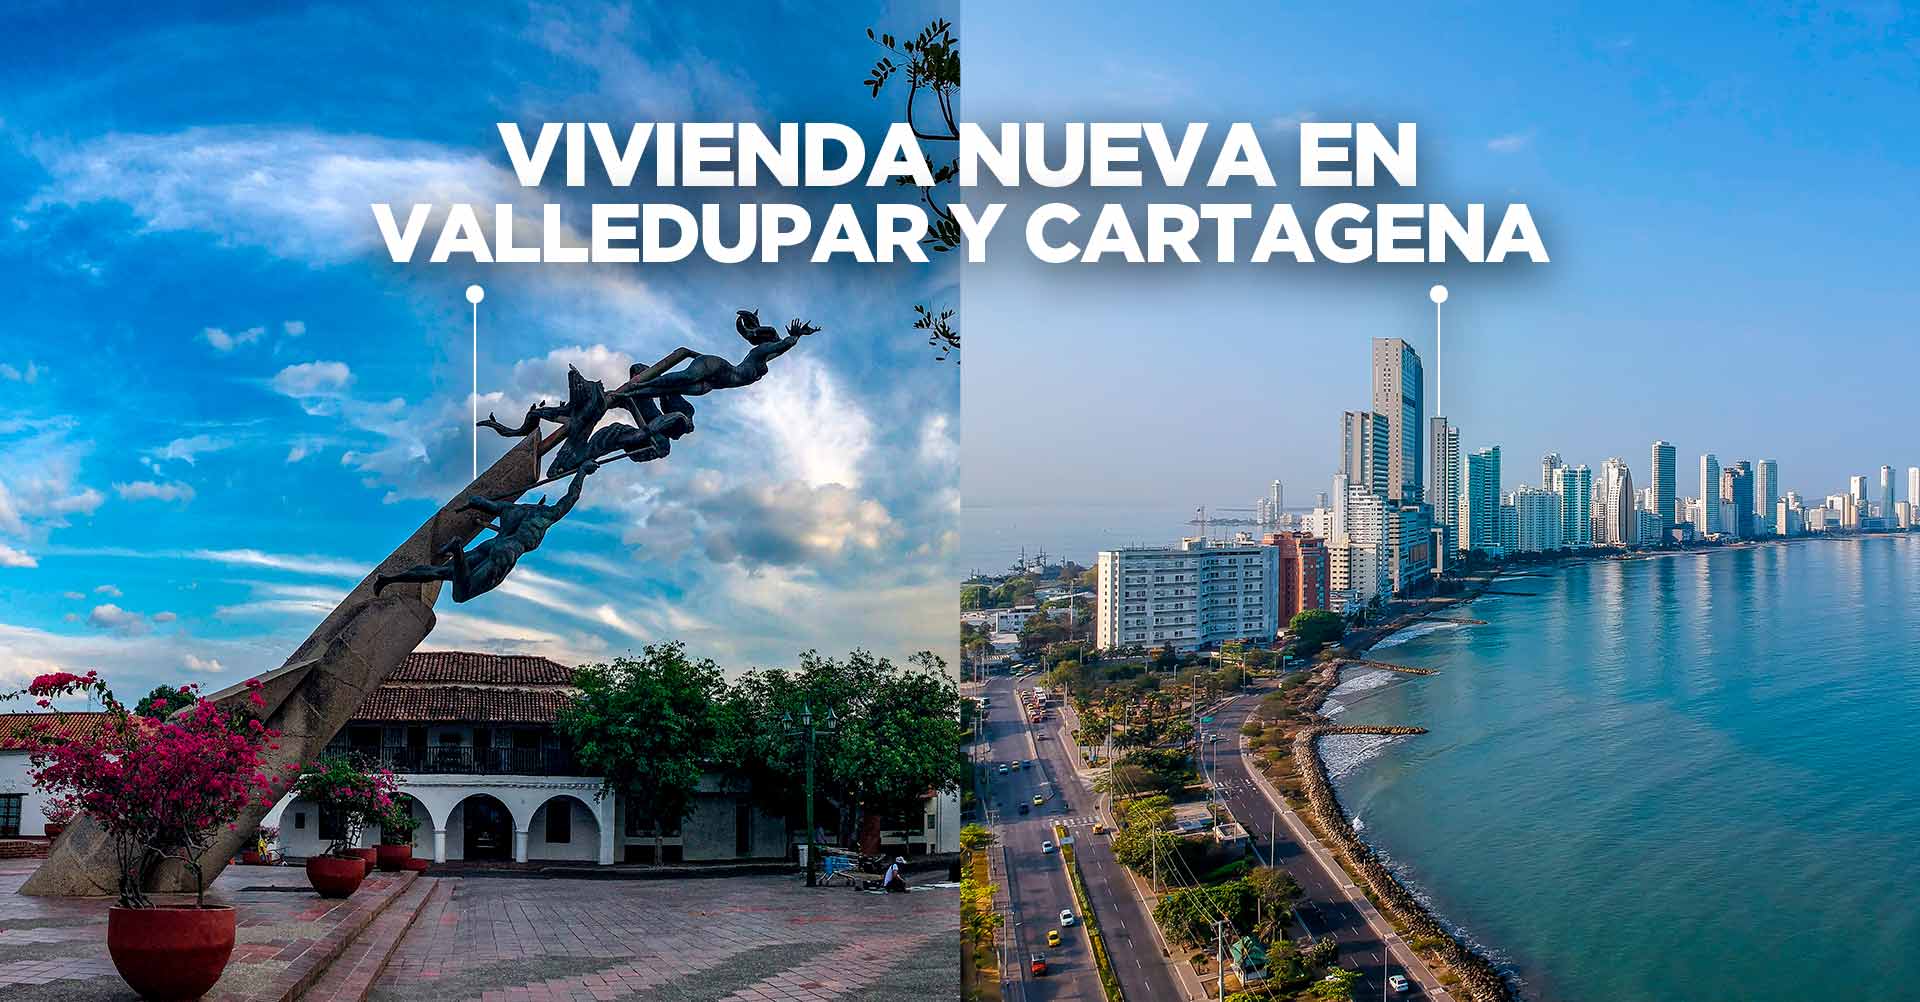 Vivienda nueva en Valledupar y Cartagena 2021